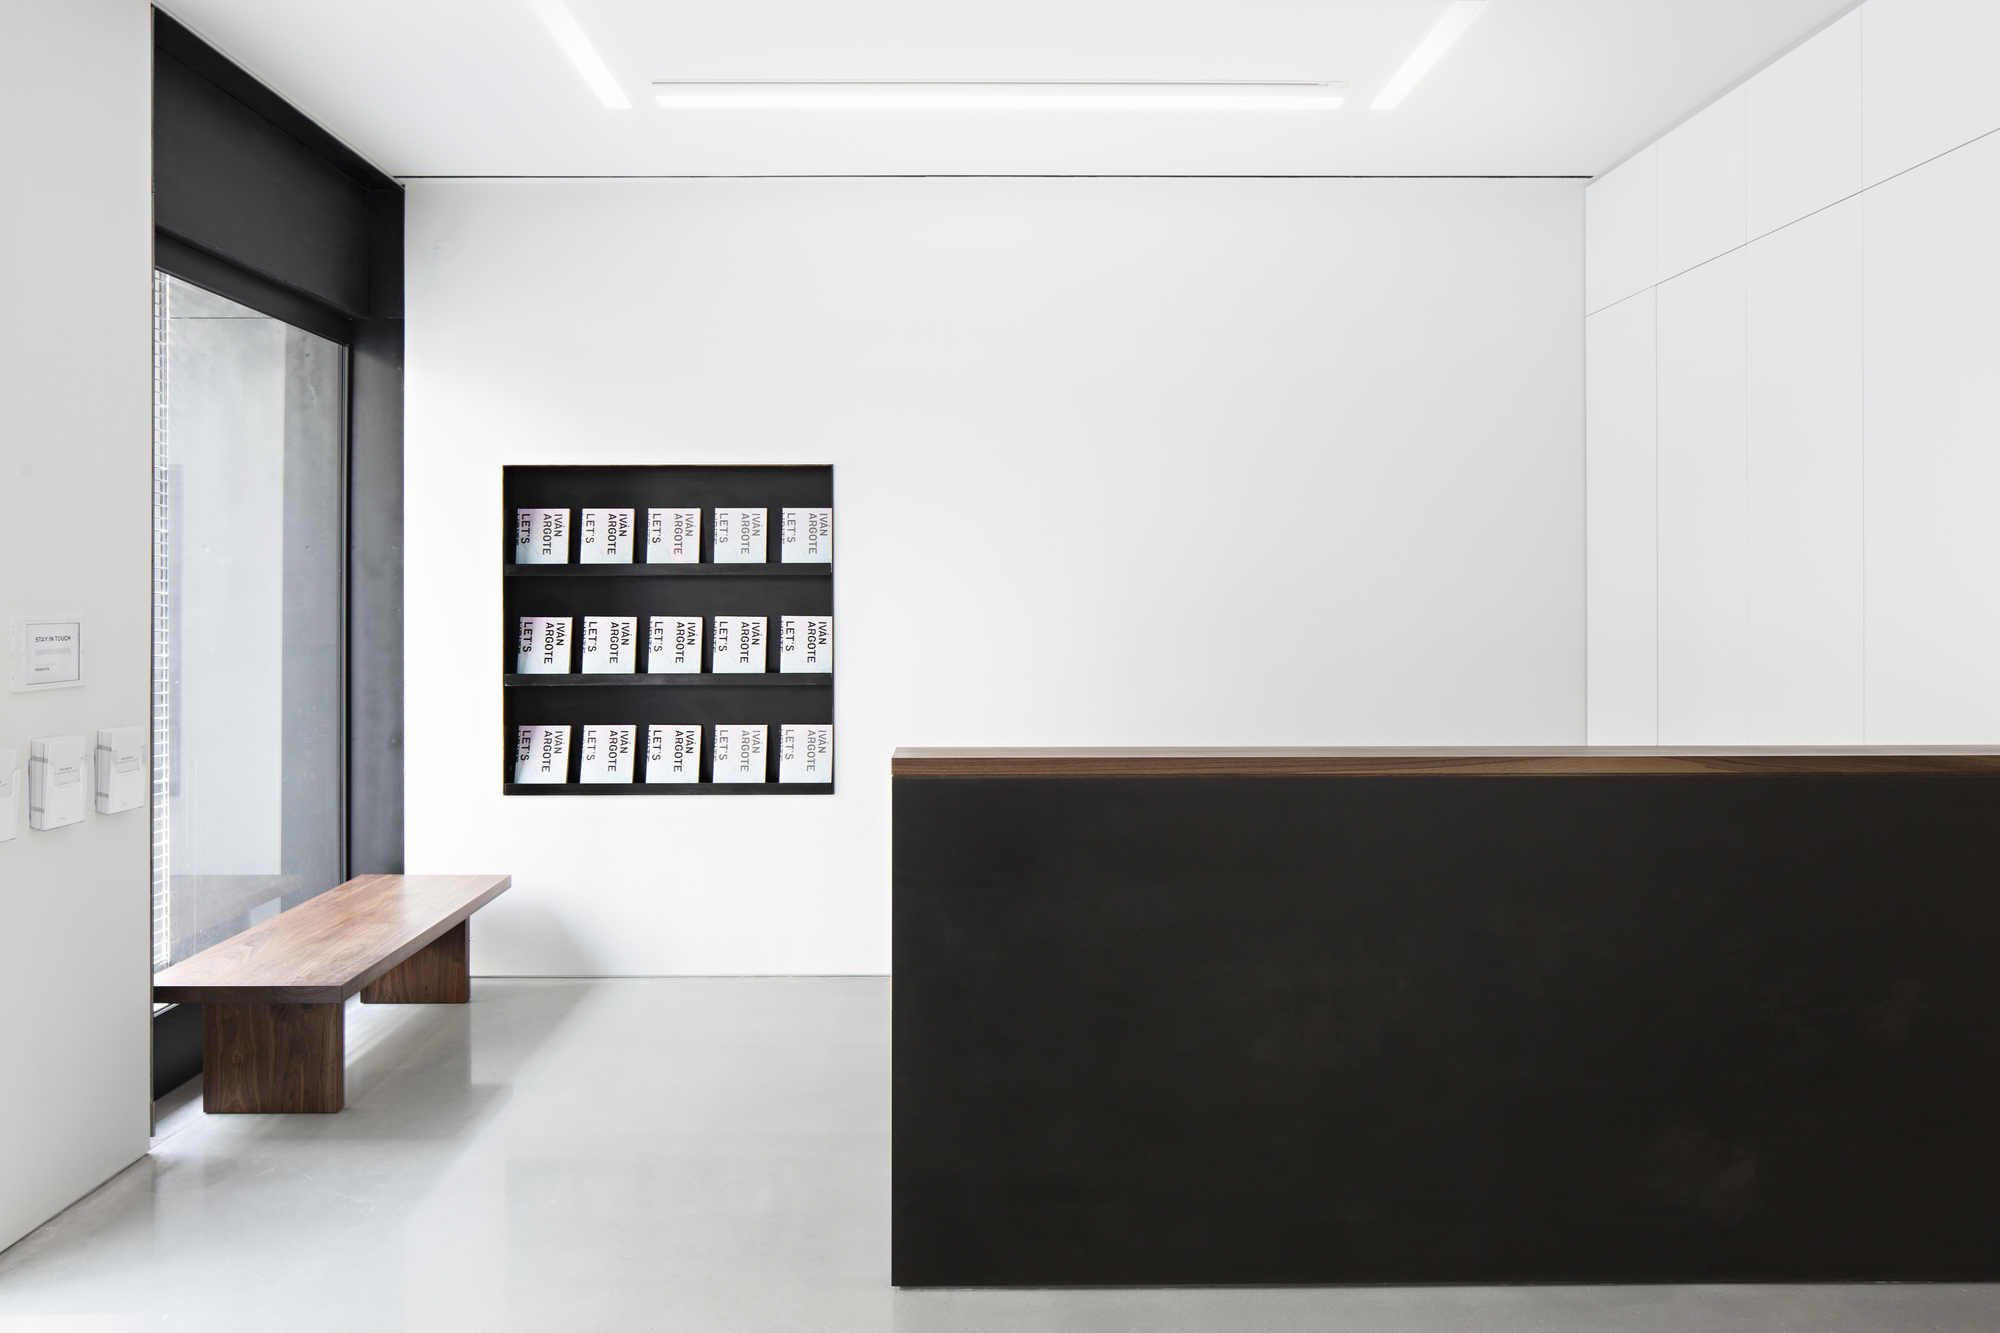 图片[1]|纽约贝浩登画廊 / PRO-Peterson Rich Office|ART-Arrakis | 建筑室内设计的创新与灵感